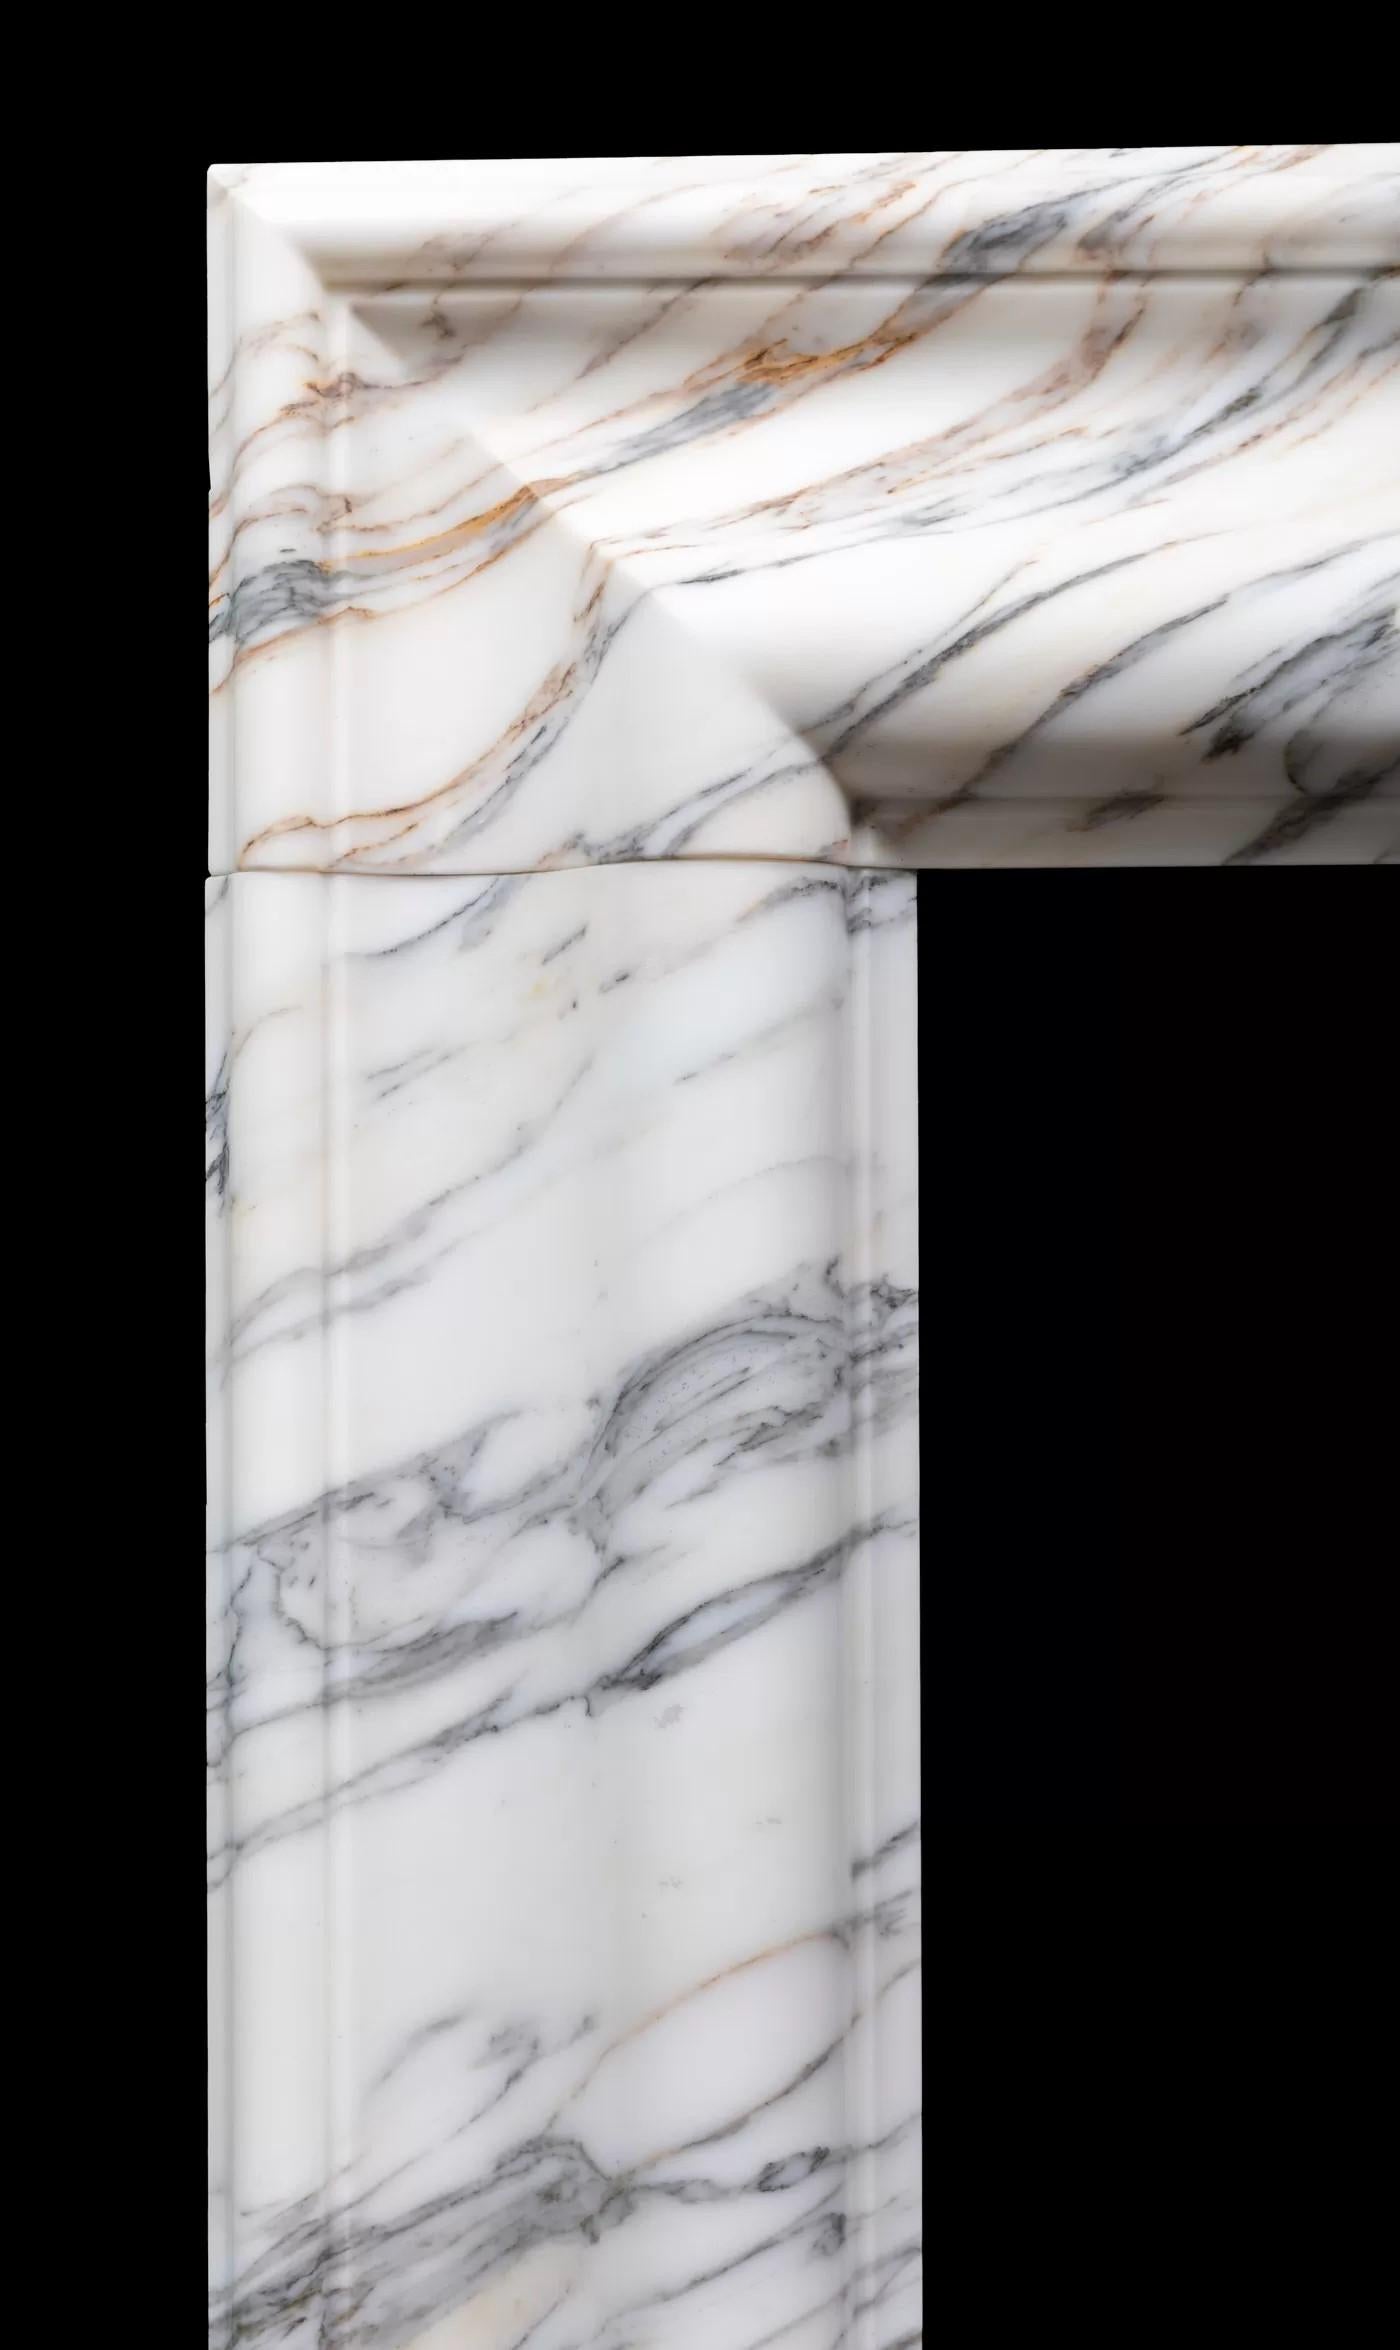 Eine mittelgroße Kaminumrandung im Bolection-Stil aus italienischem Arabescato-Marmor von Ryan & Smith.

Ein klassischer Kamin im Bolection-Stil mit einem sanft geformten Rahmen auf schlichten, quadratischen Sockeln, der aus sorgfältig ausgewählten